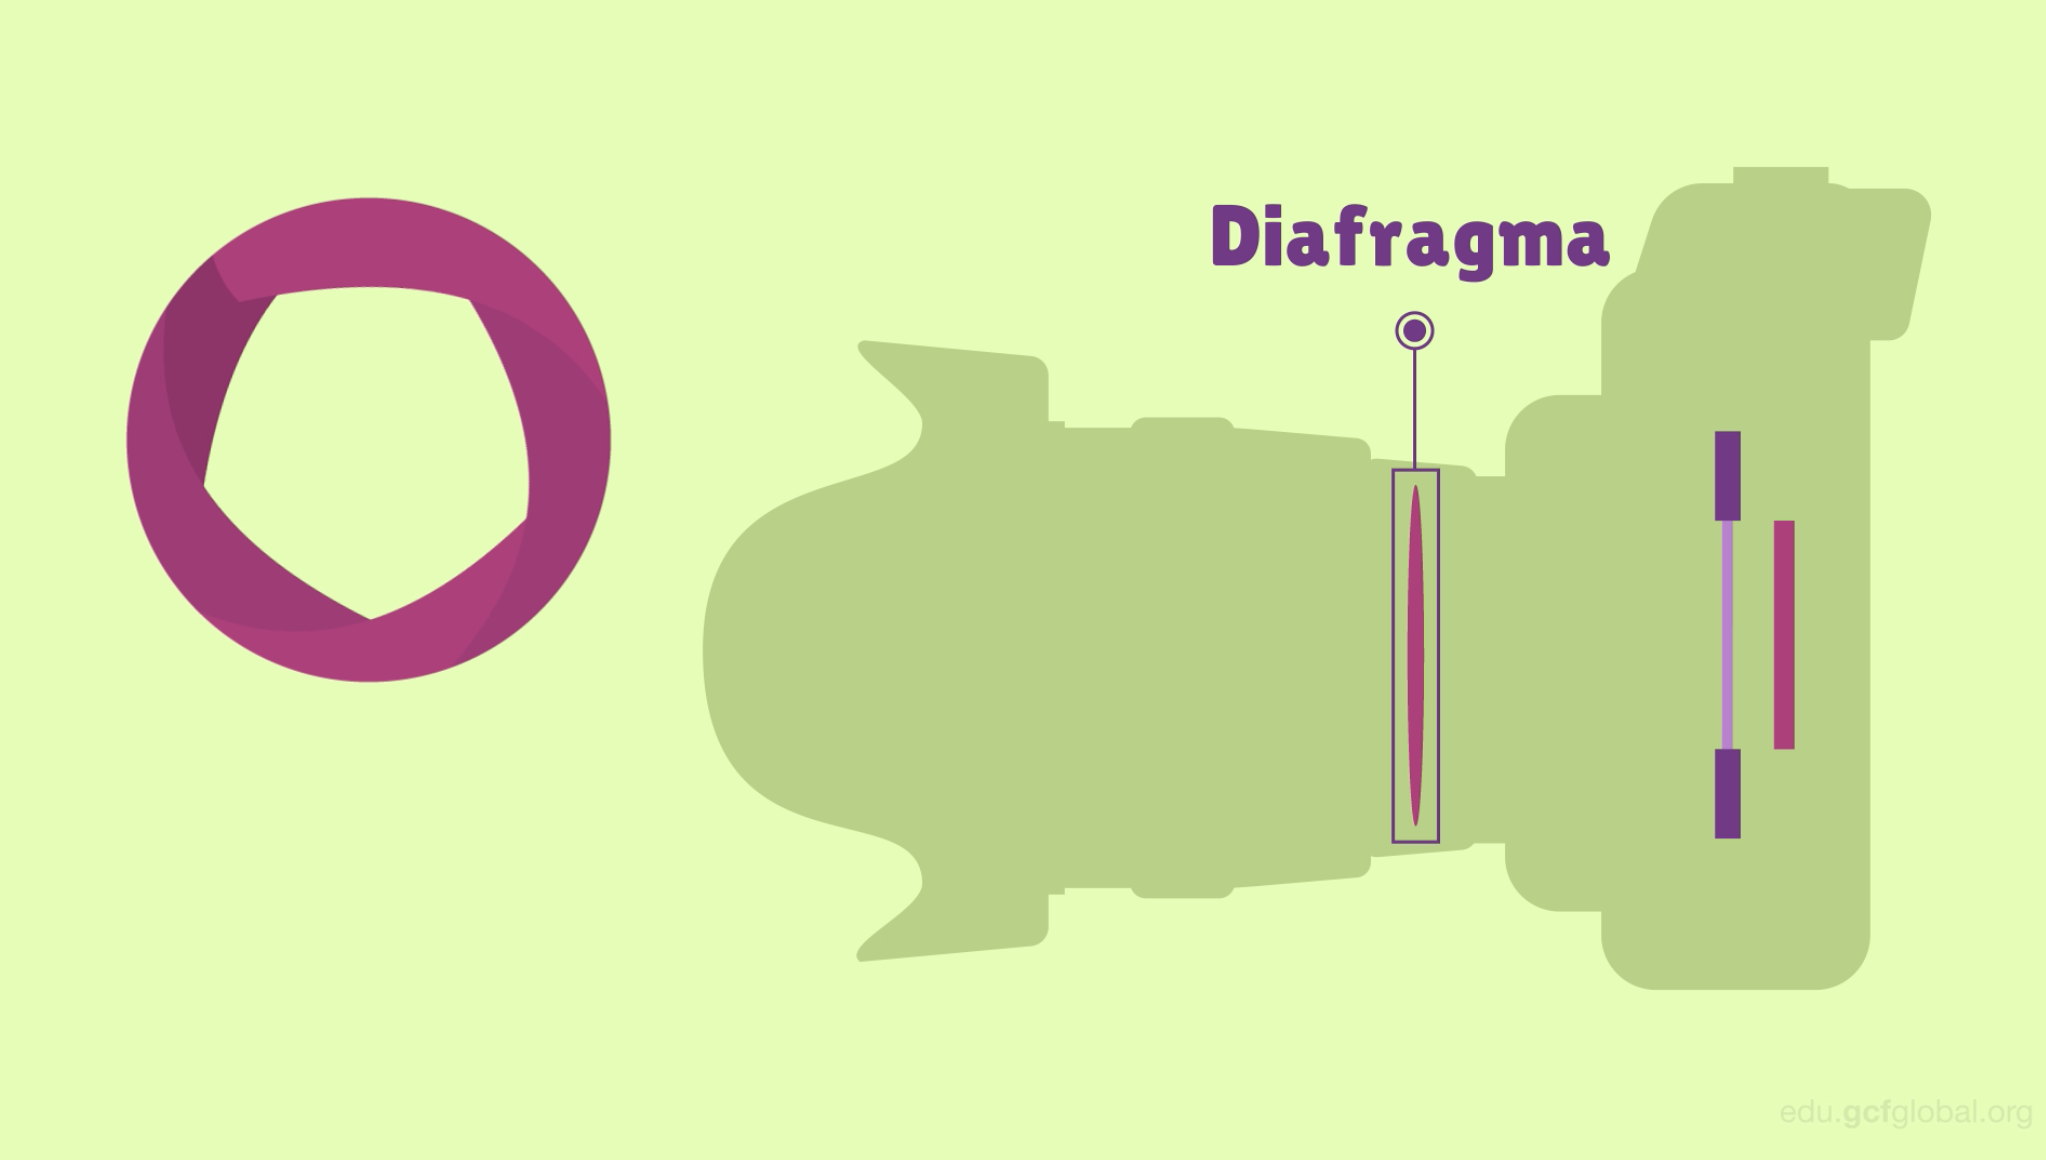 El Diafragma abre o cierra el orificio por donde ingresa la luz.